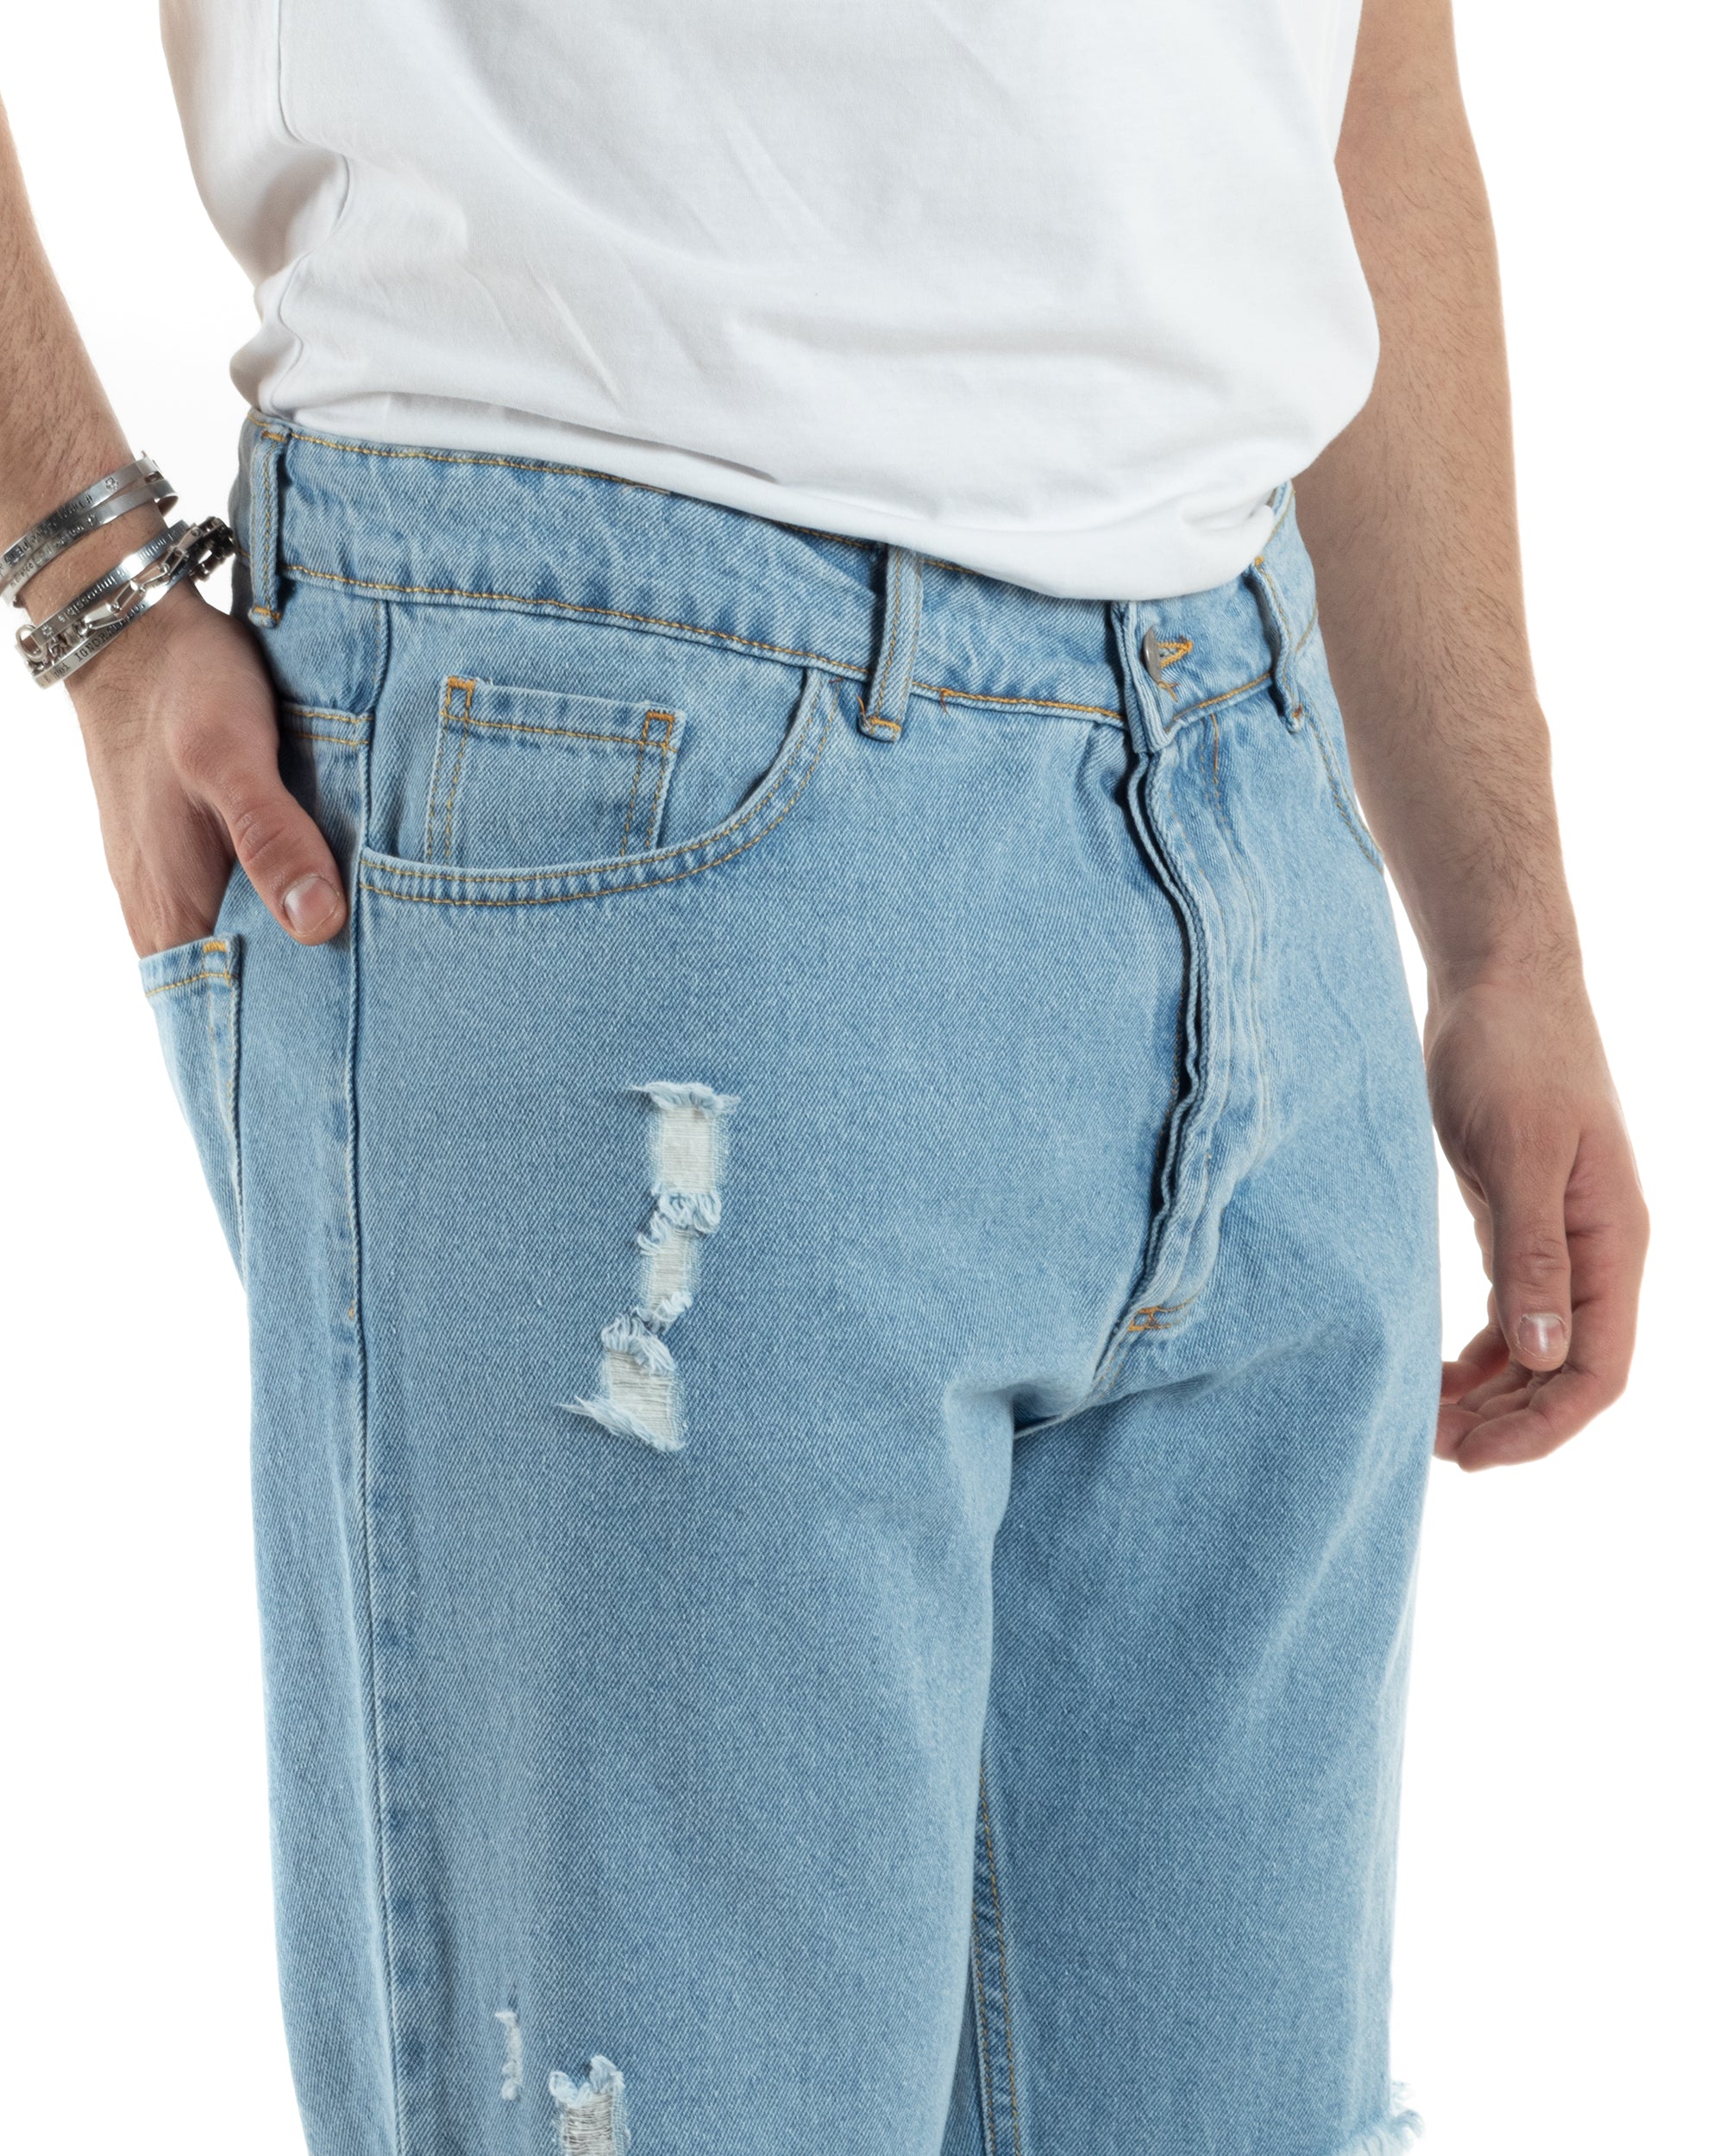 Pantaloni Jeans Uomo Straight Fit Denim Chiaro Con Strappi Cinque Tasche Casual GIOSAL-JS1012A